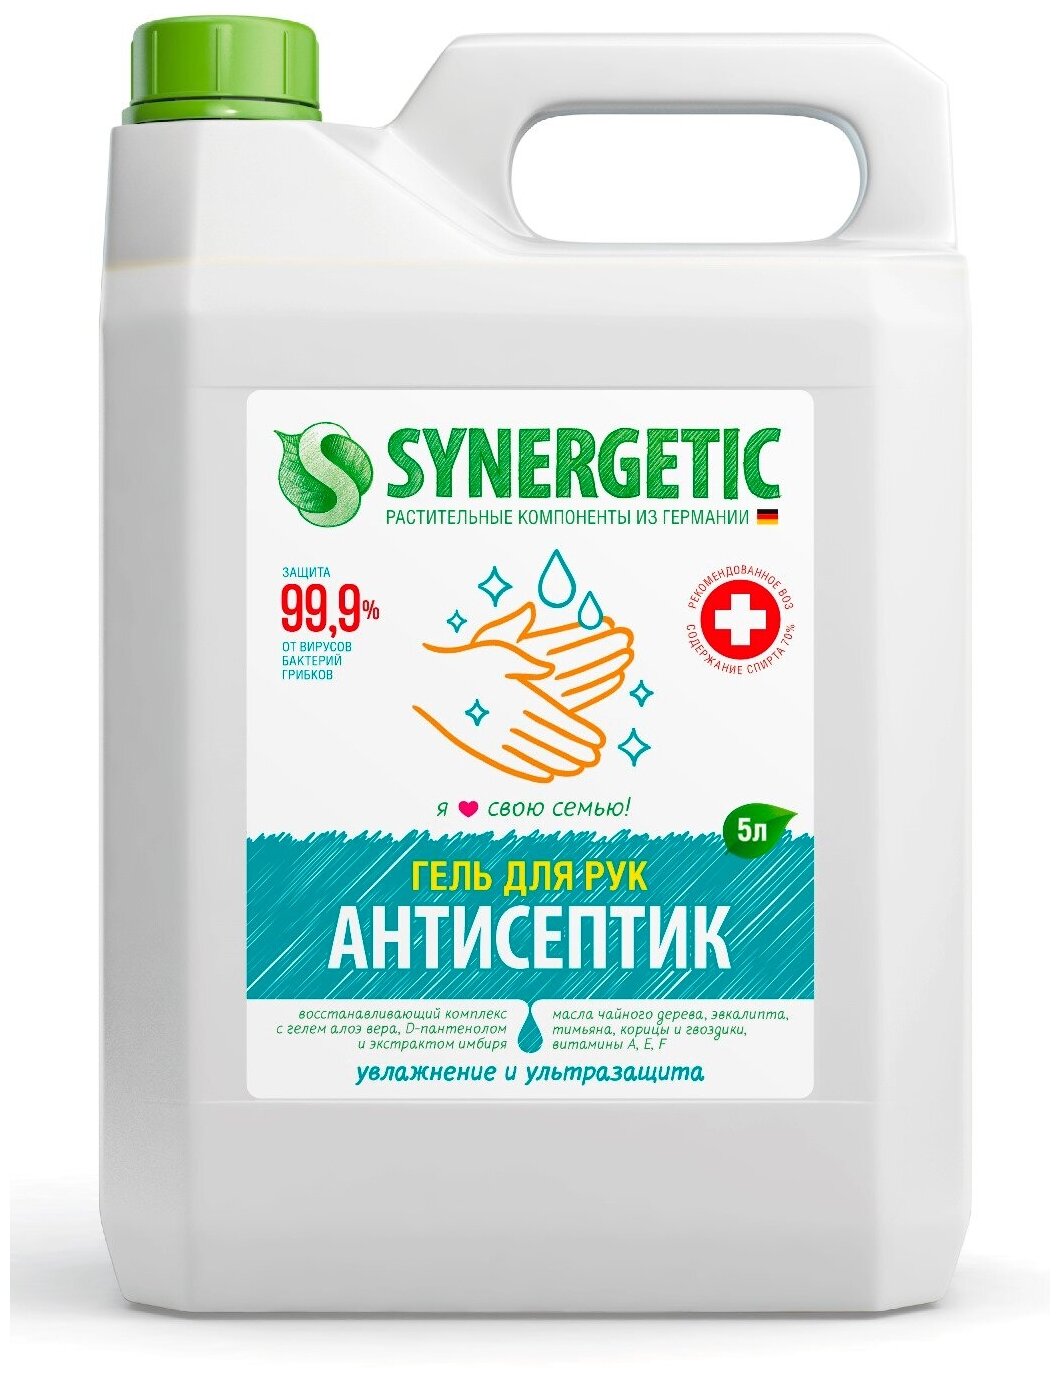 Synergetic Средство для рук антибактериальное Увлажнение и ультразащита 99,9%, 5л (гель)